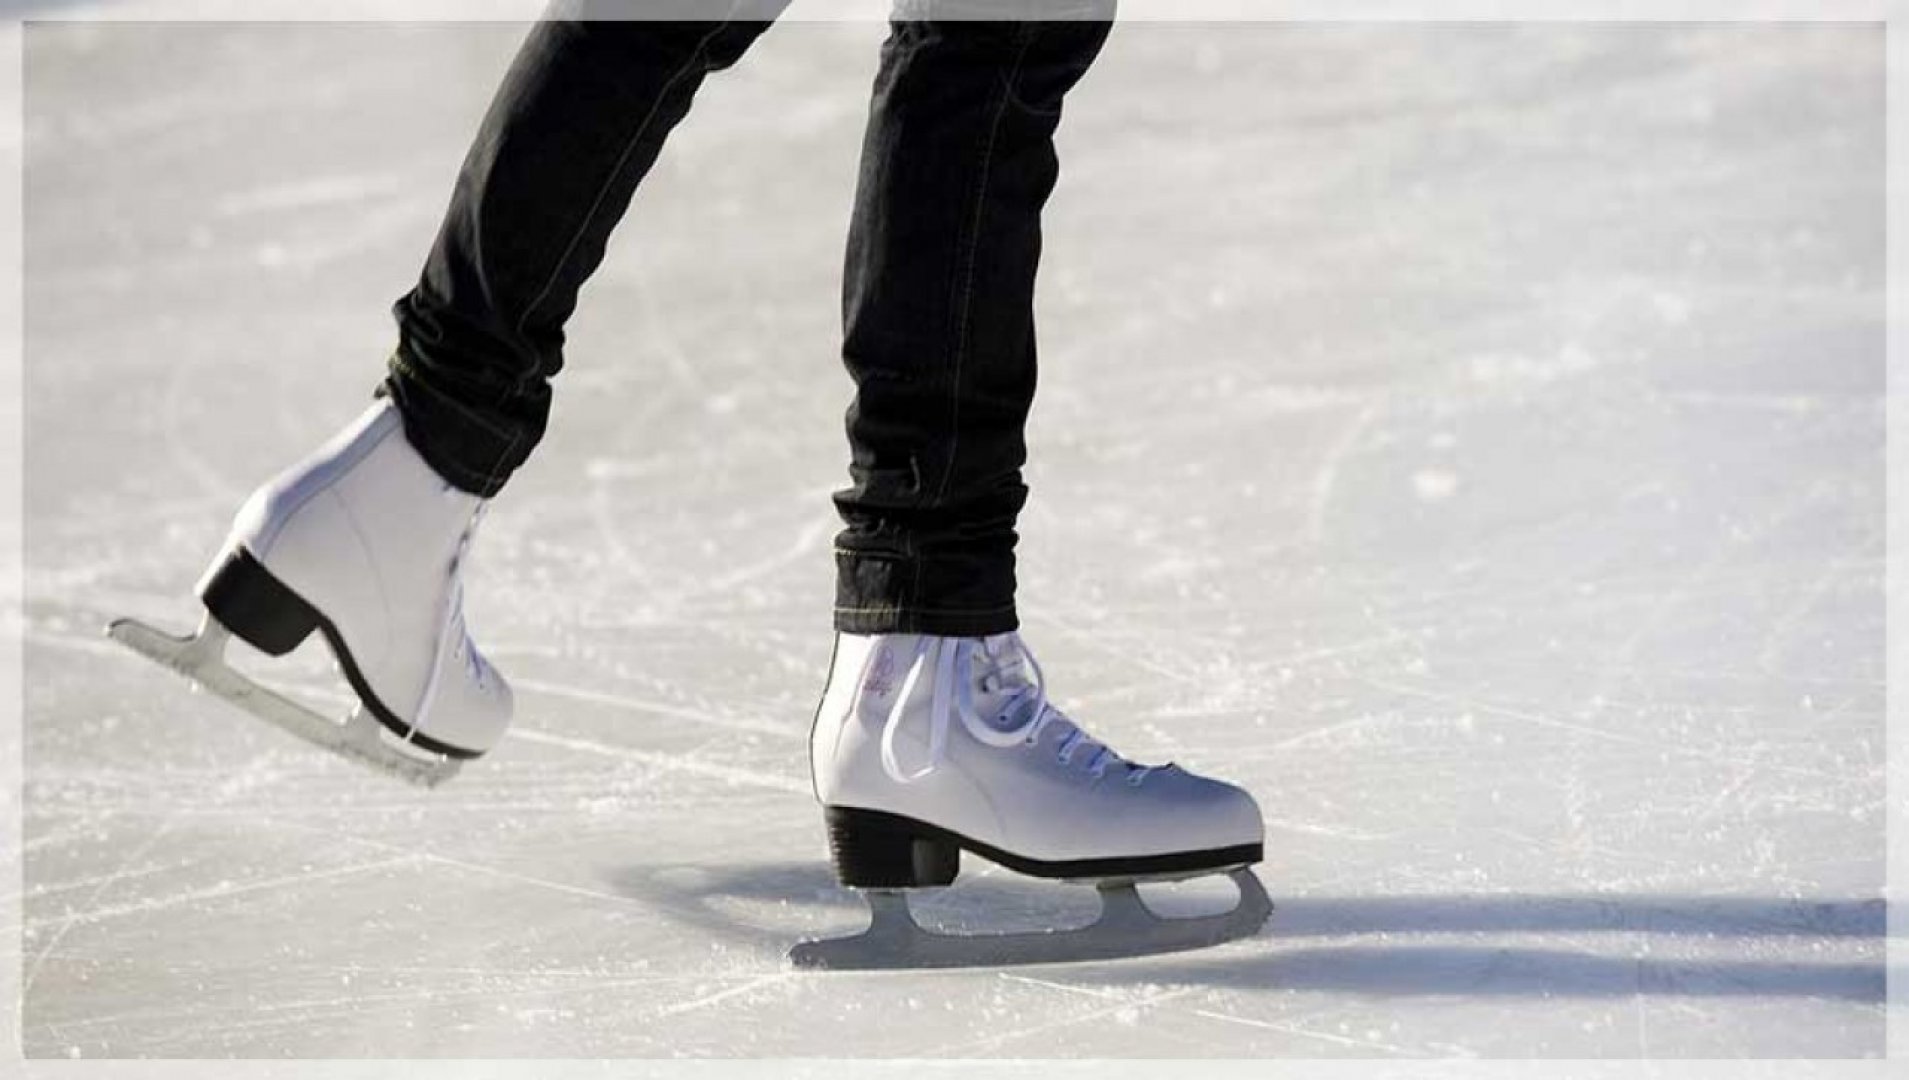 Лед коньки каток. Айс скейтинг. Каток коньки. Коньки фигурные на льду. Фигурное катание на коньках.